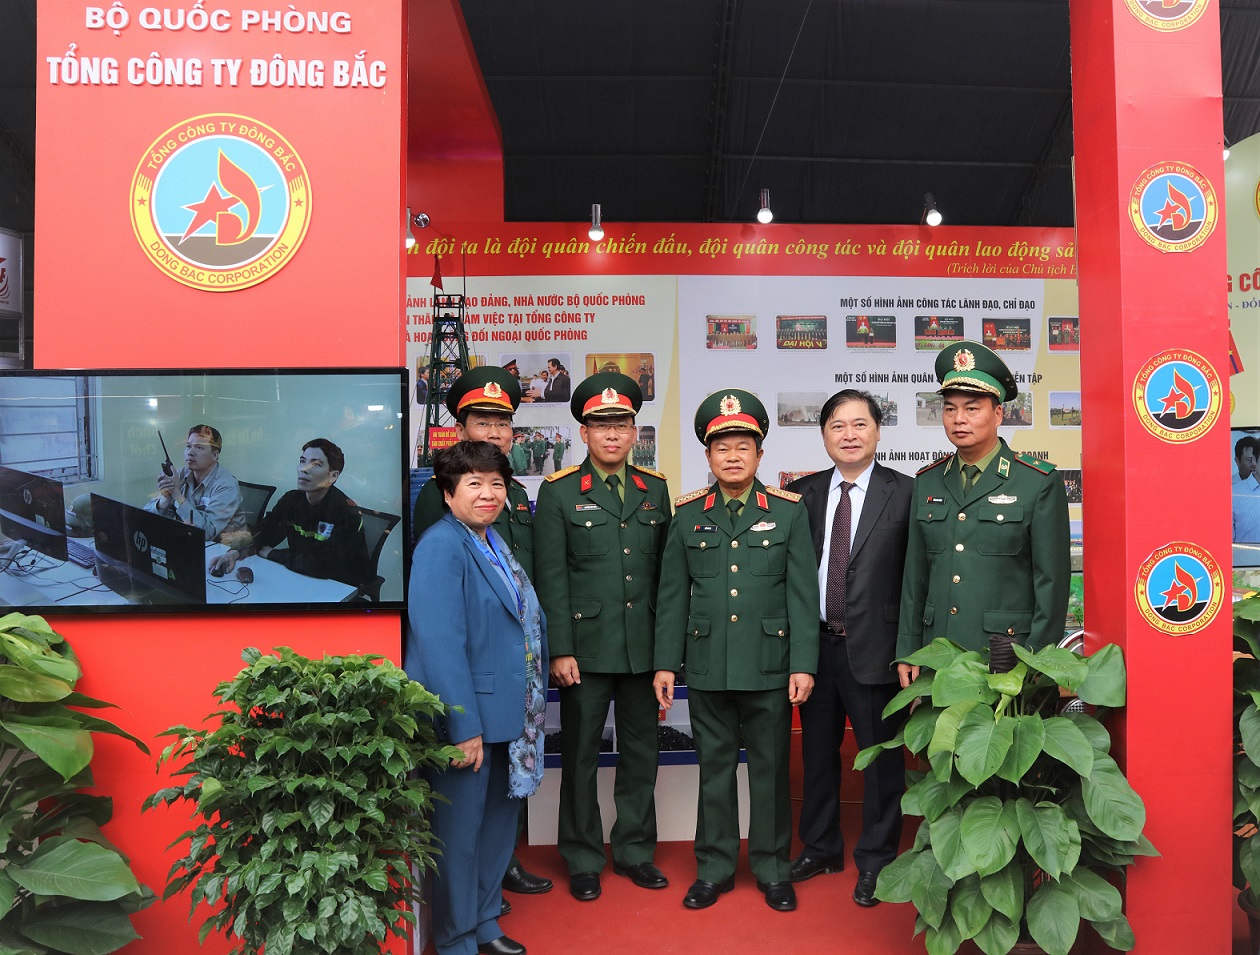 Tổng công  ty Đông Bắc tham gia Triển lãm - Hội chợ Việt Bắc 2019 do Bộ Quốc phòng tổ chức, được Bộ trưởng Bộ Quốc phòng tặng Bằng khen